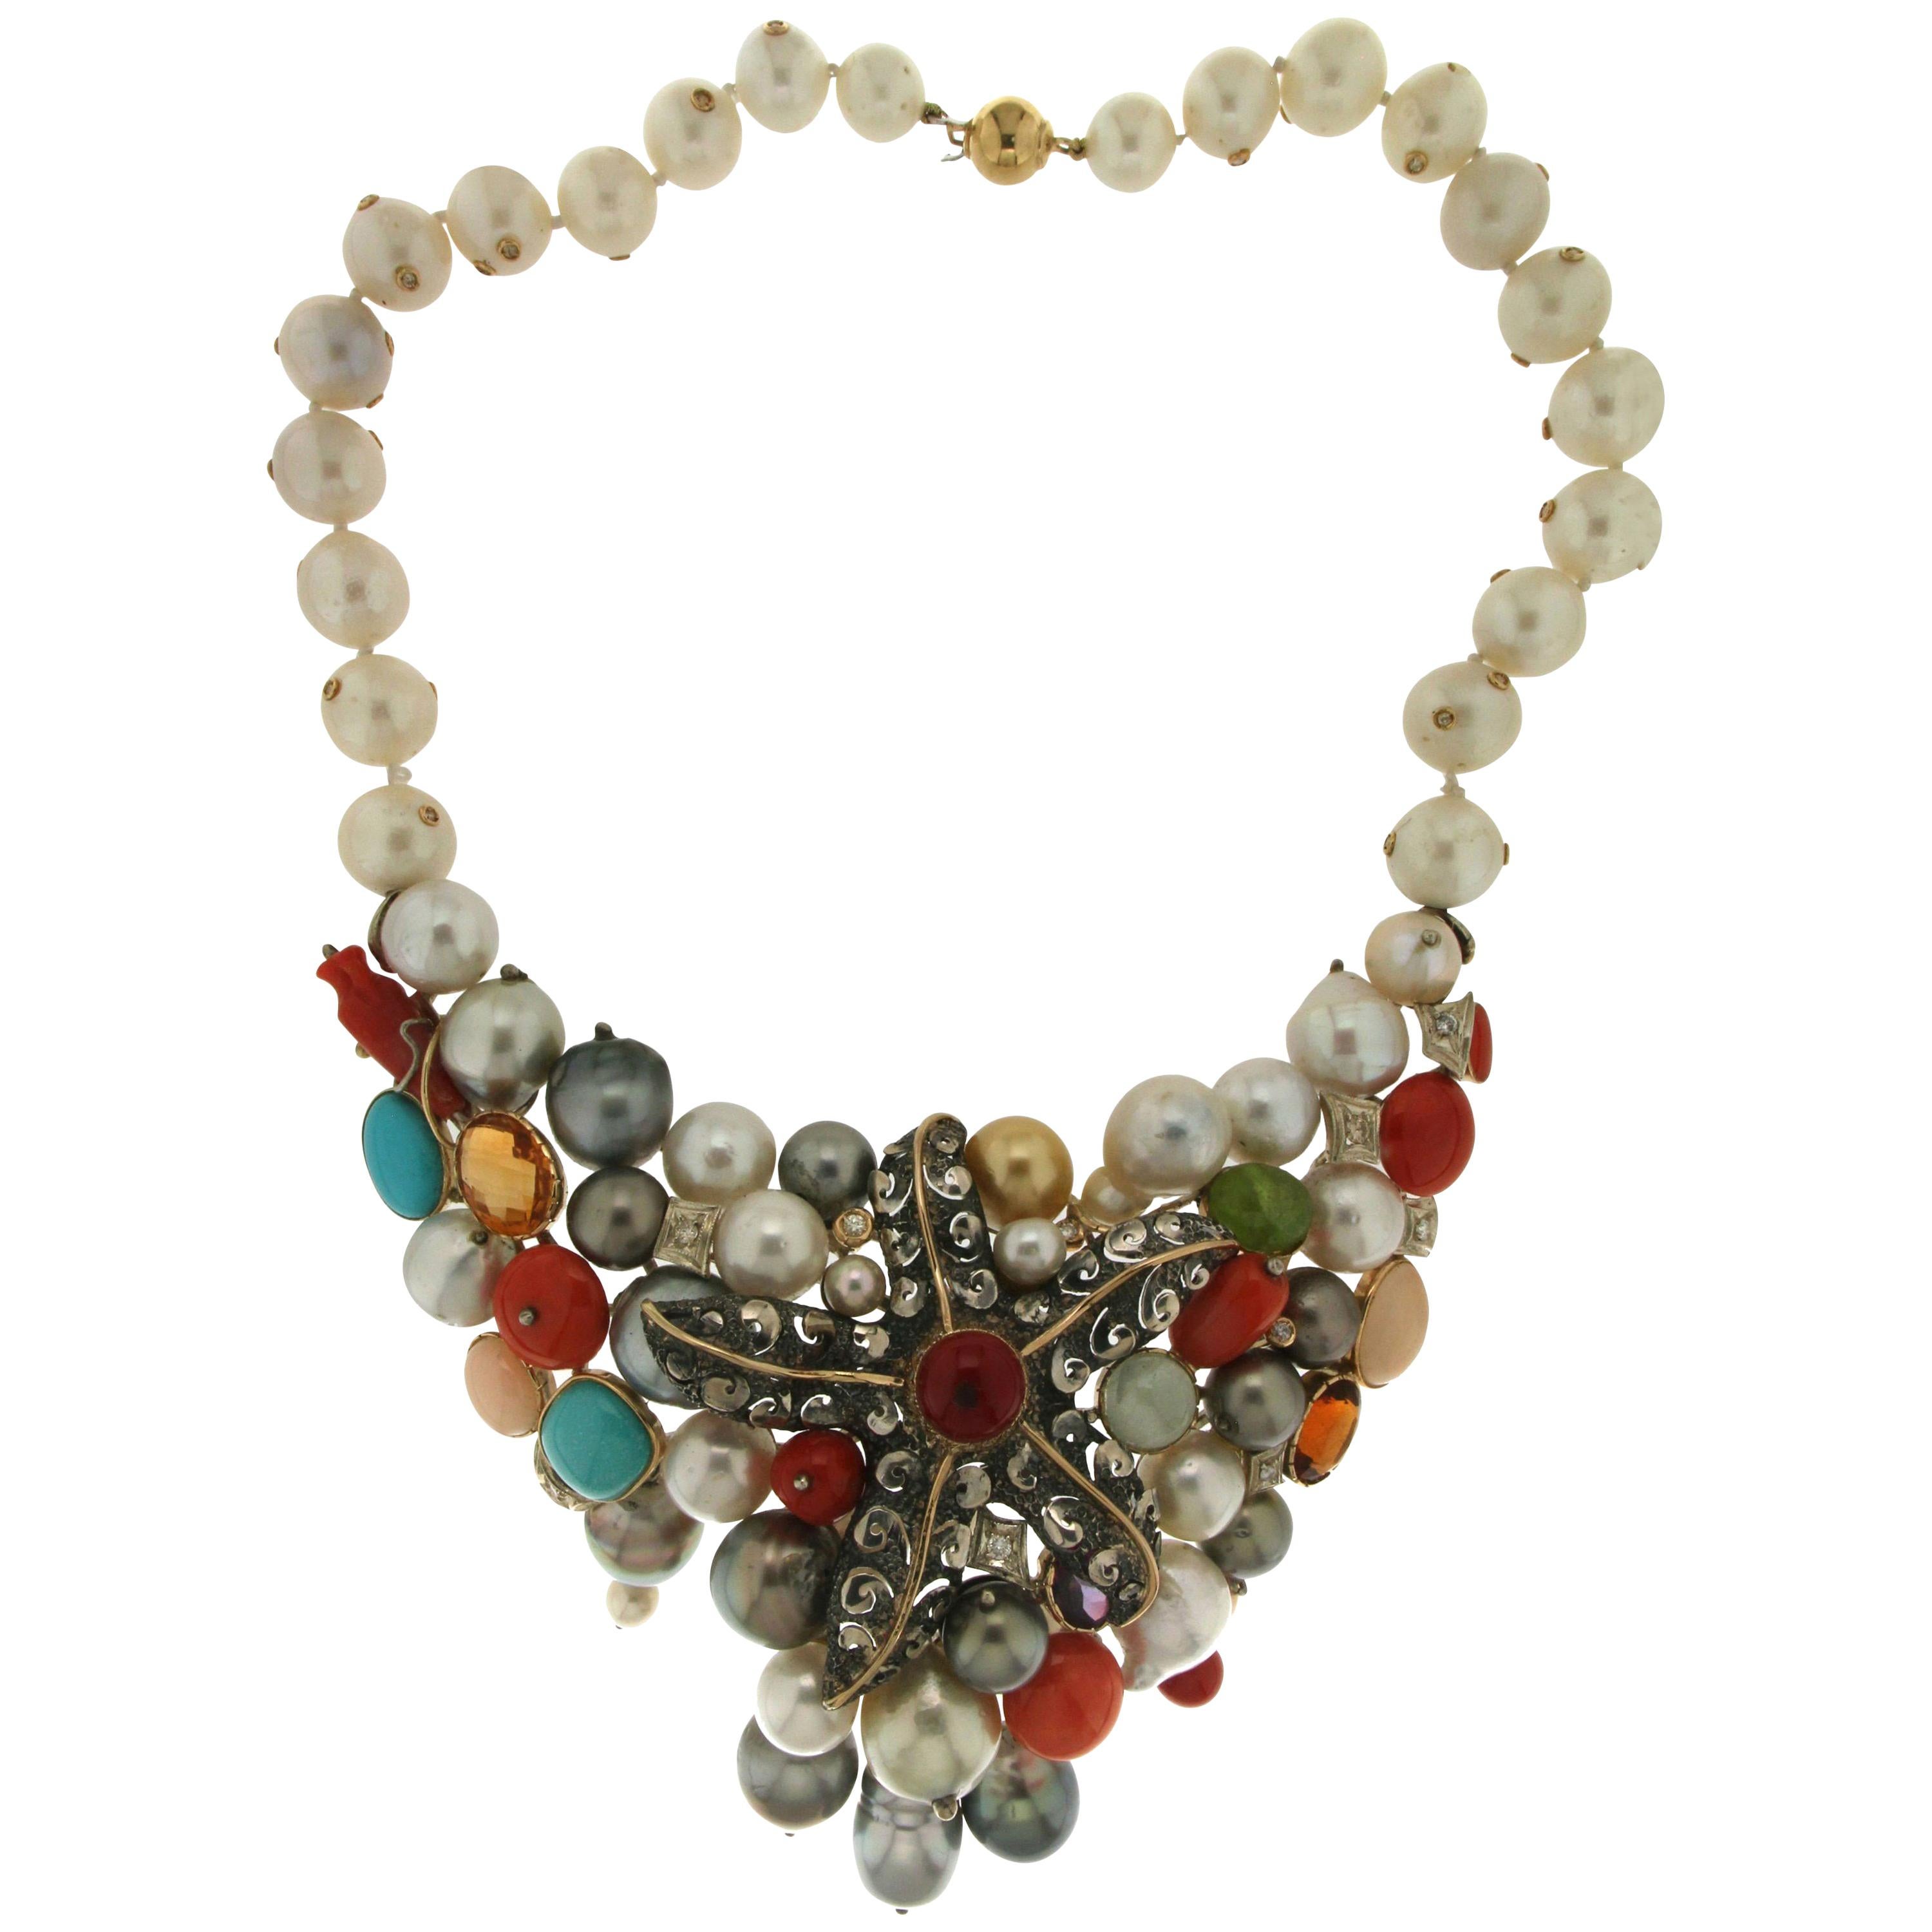 Collier ras du cou artisanal en or jaune 14 carats avec perles, corail et turquoises